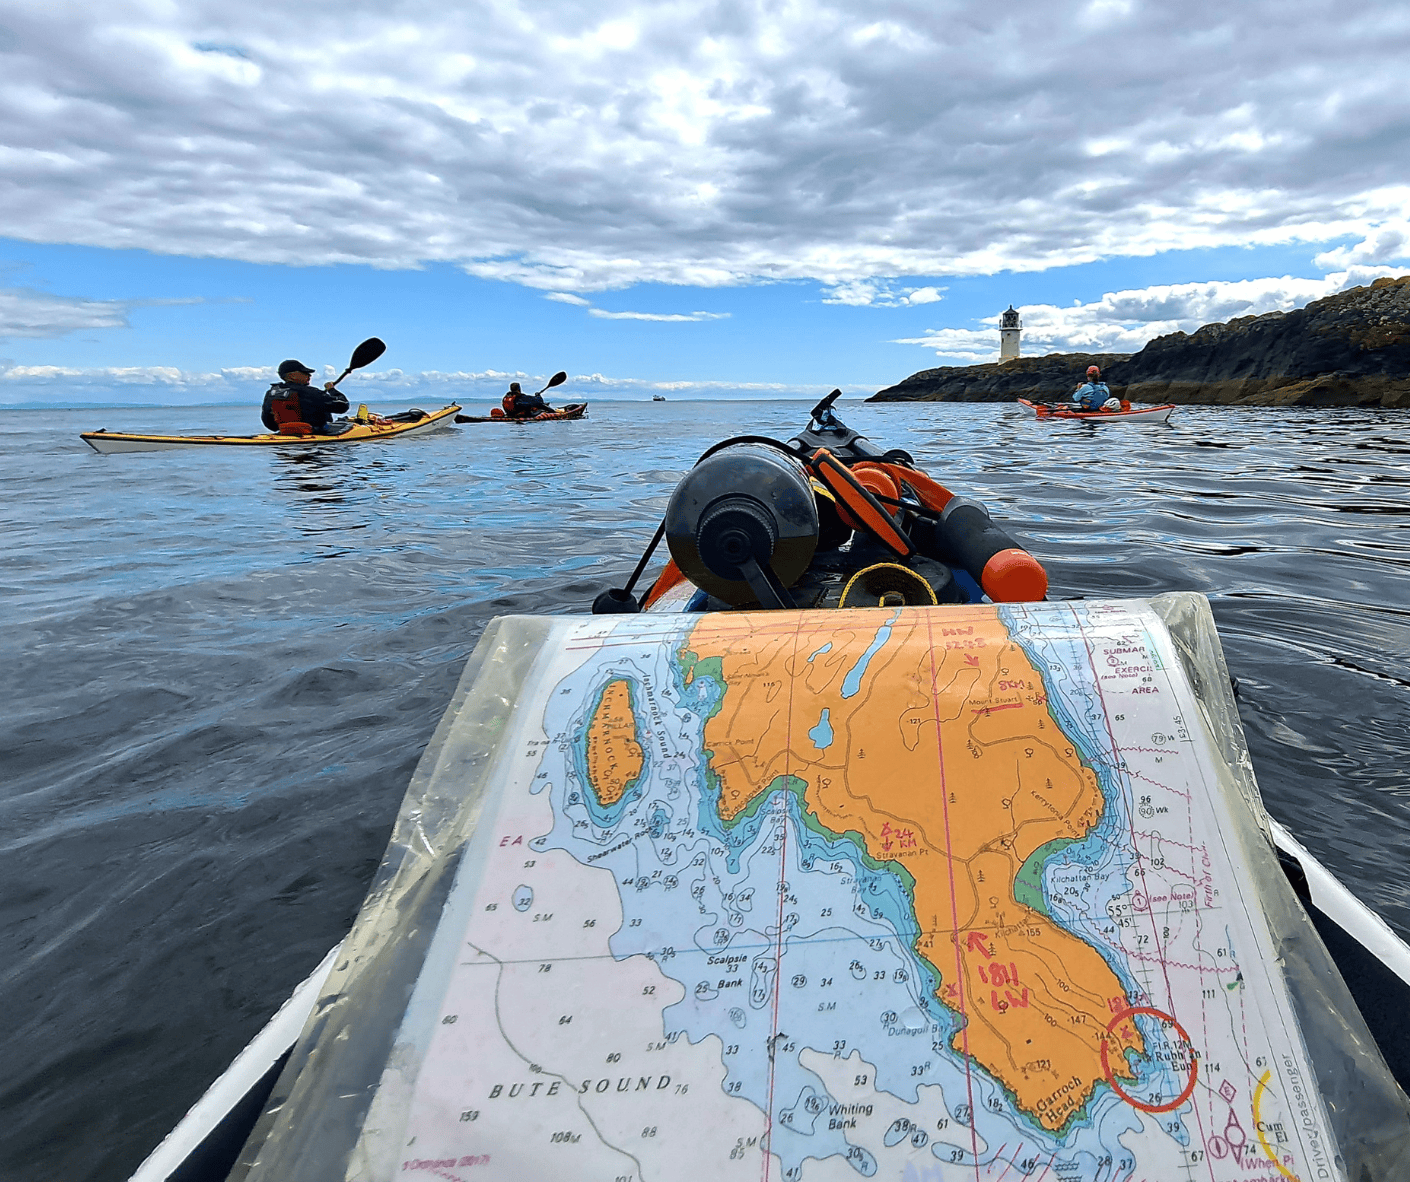 Kistie Macmillan navigating on a sea kayak expendition